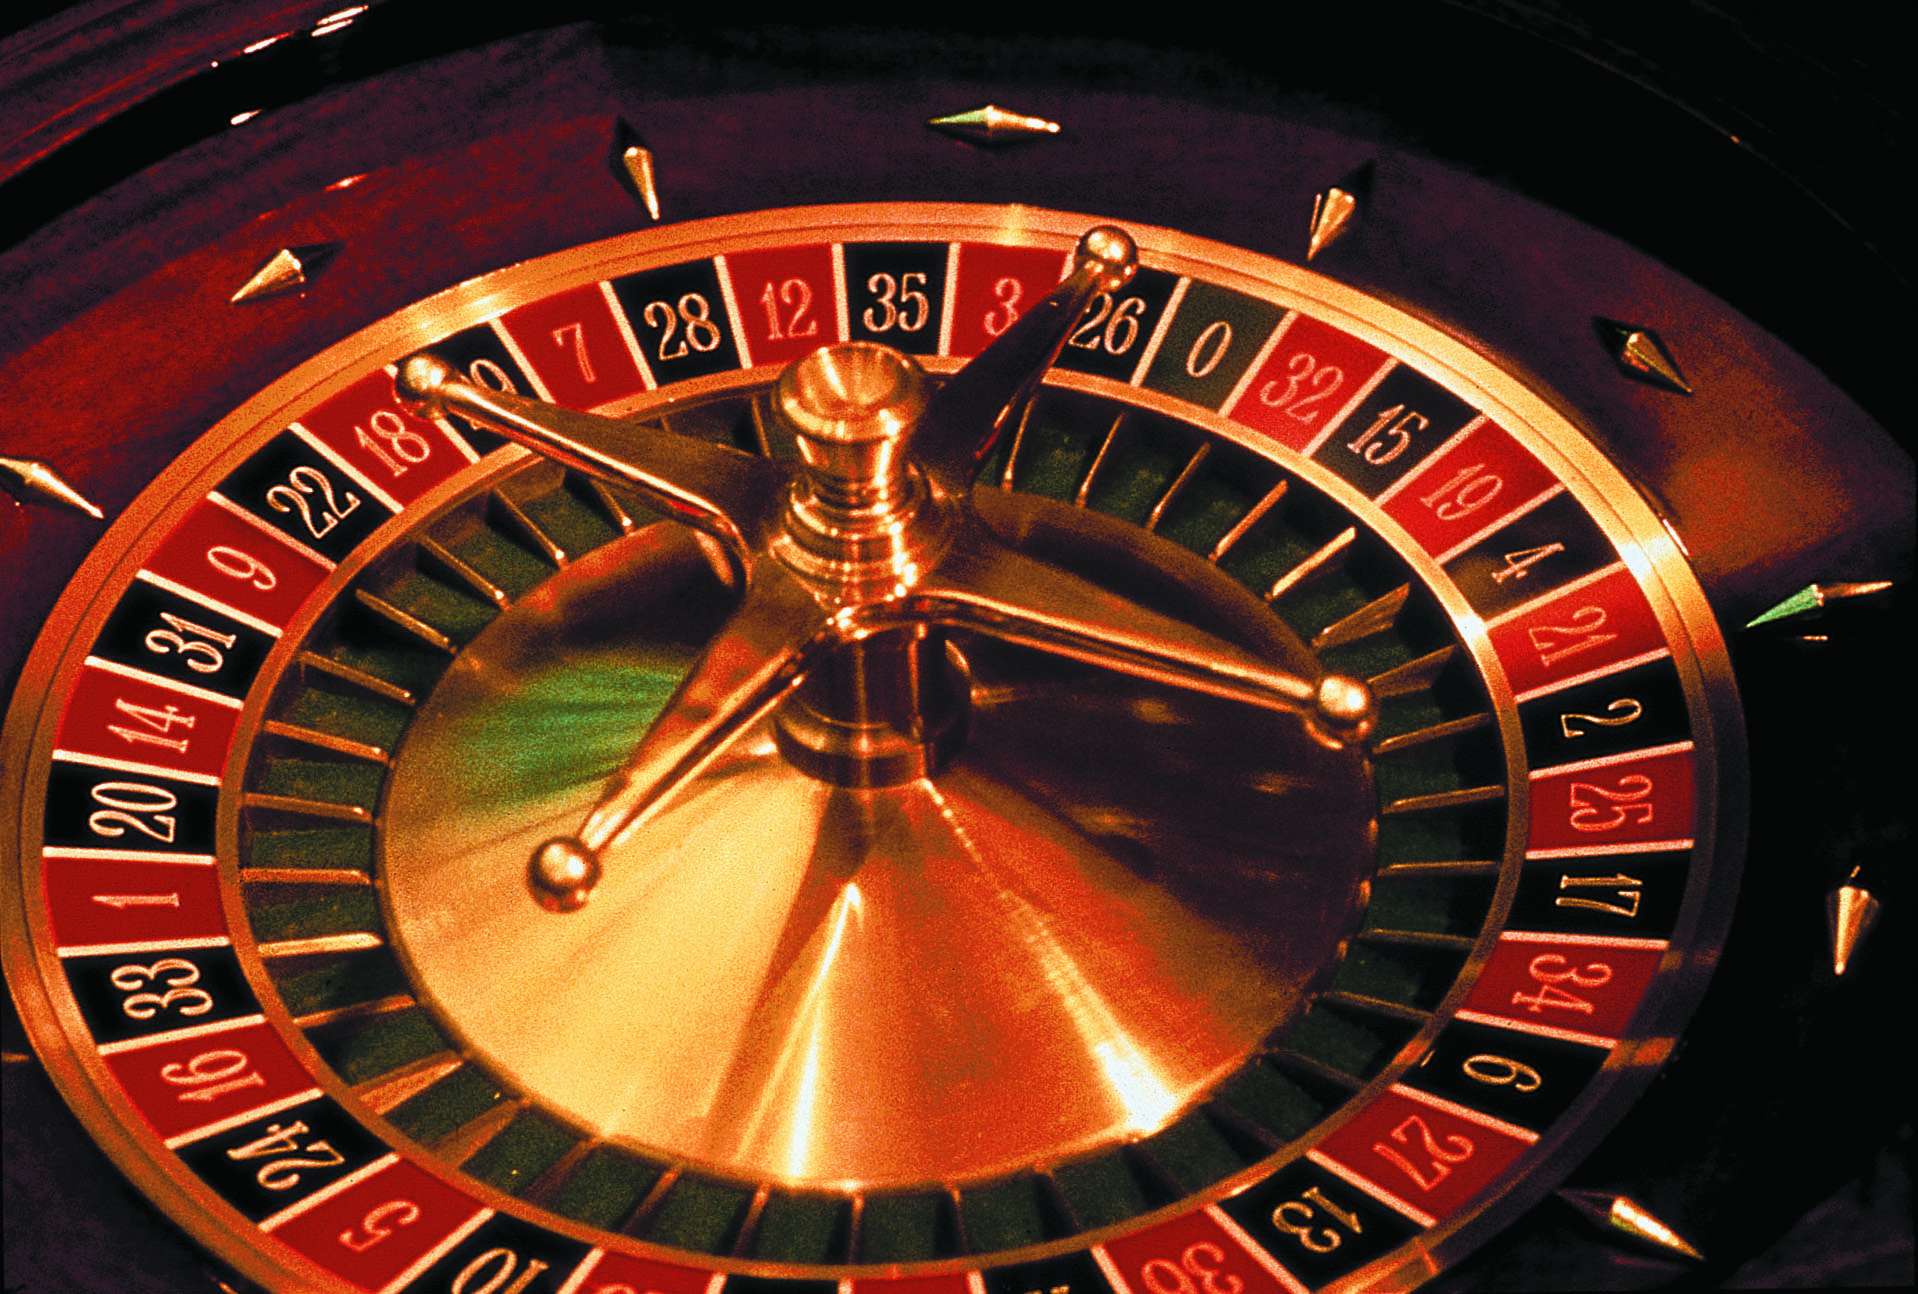 Jeux casino : vous aussi, vous y avez droit